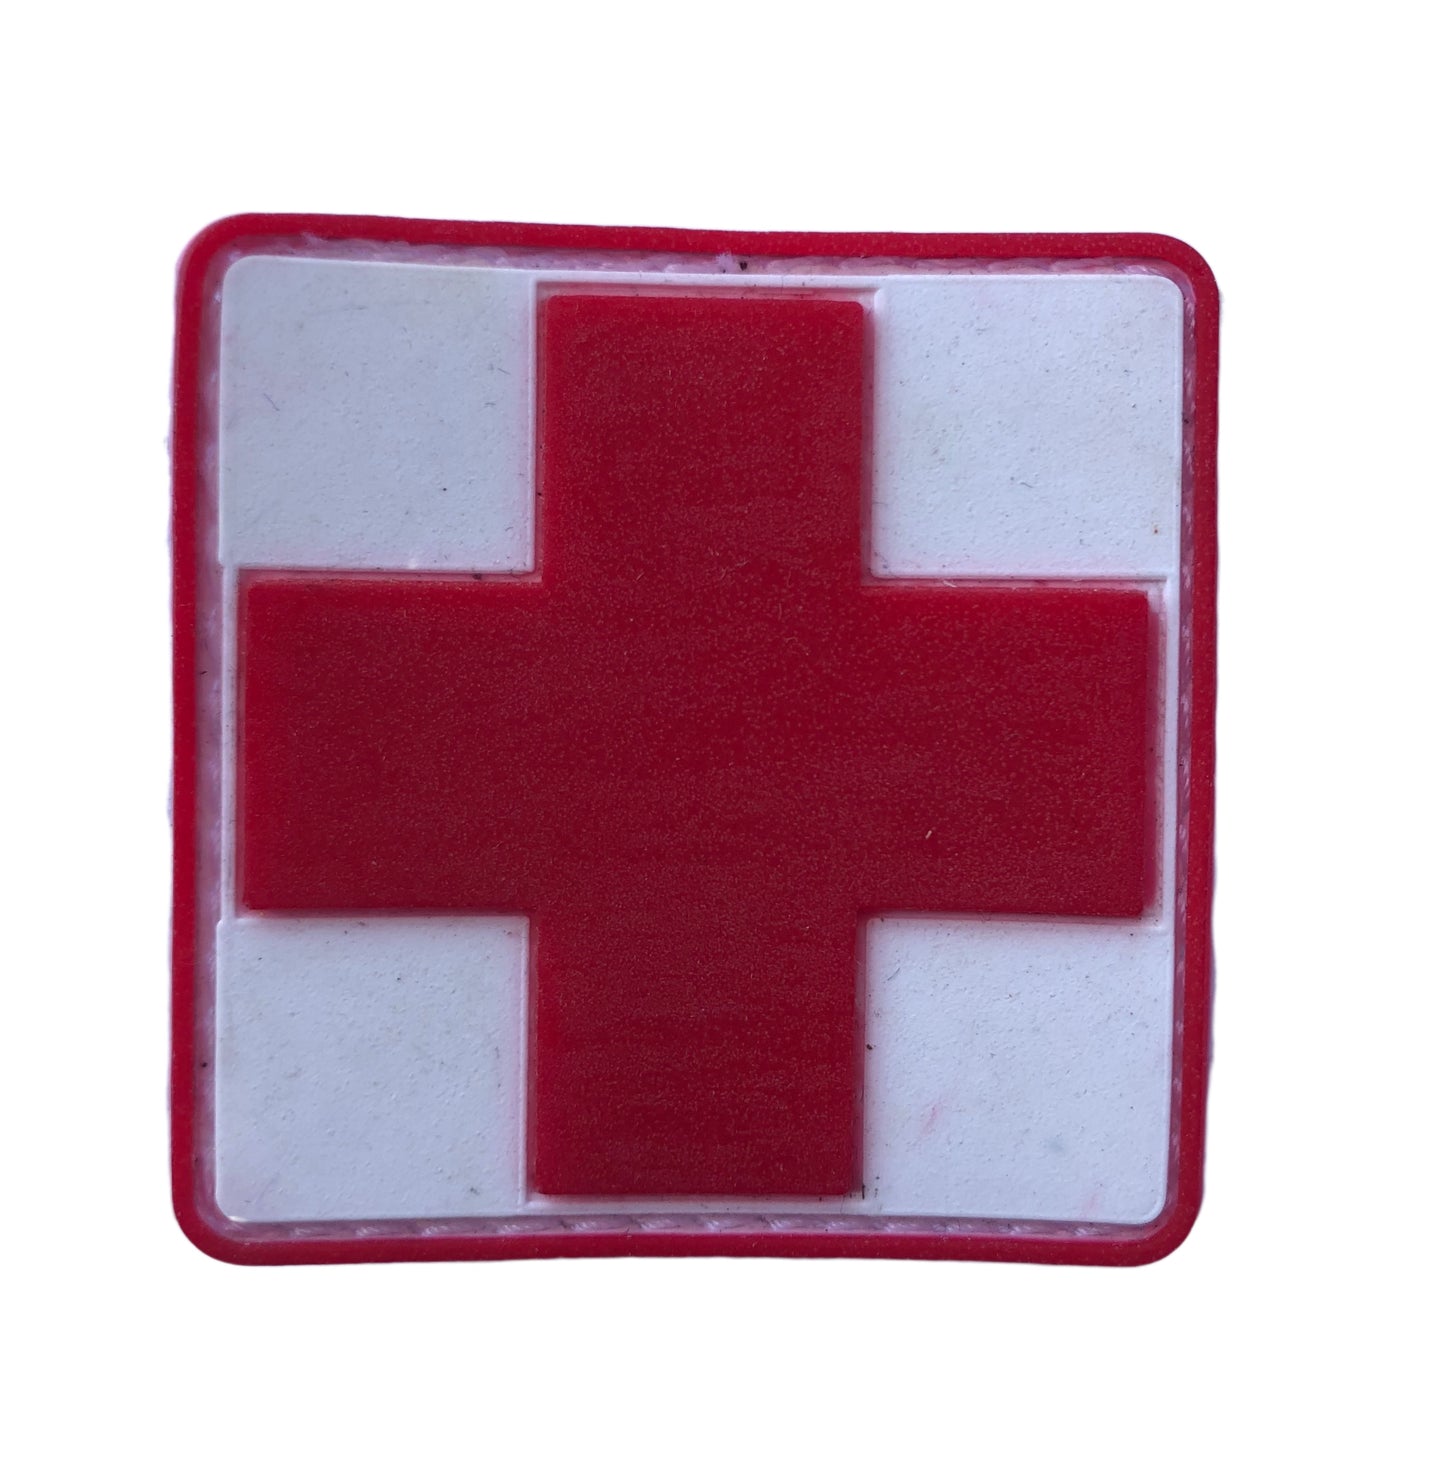 Insignia Militar Cruz Roja Táctica Parche Pvc